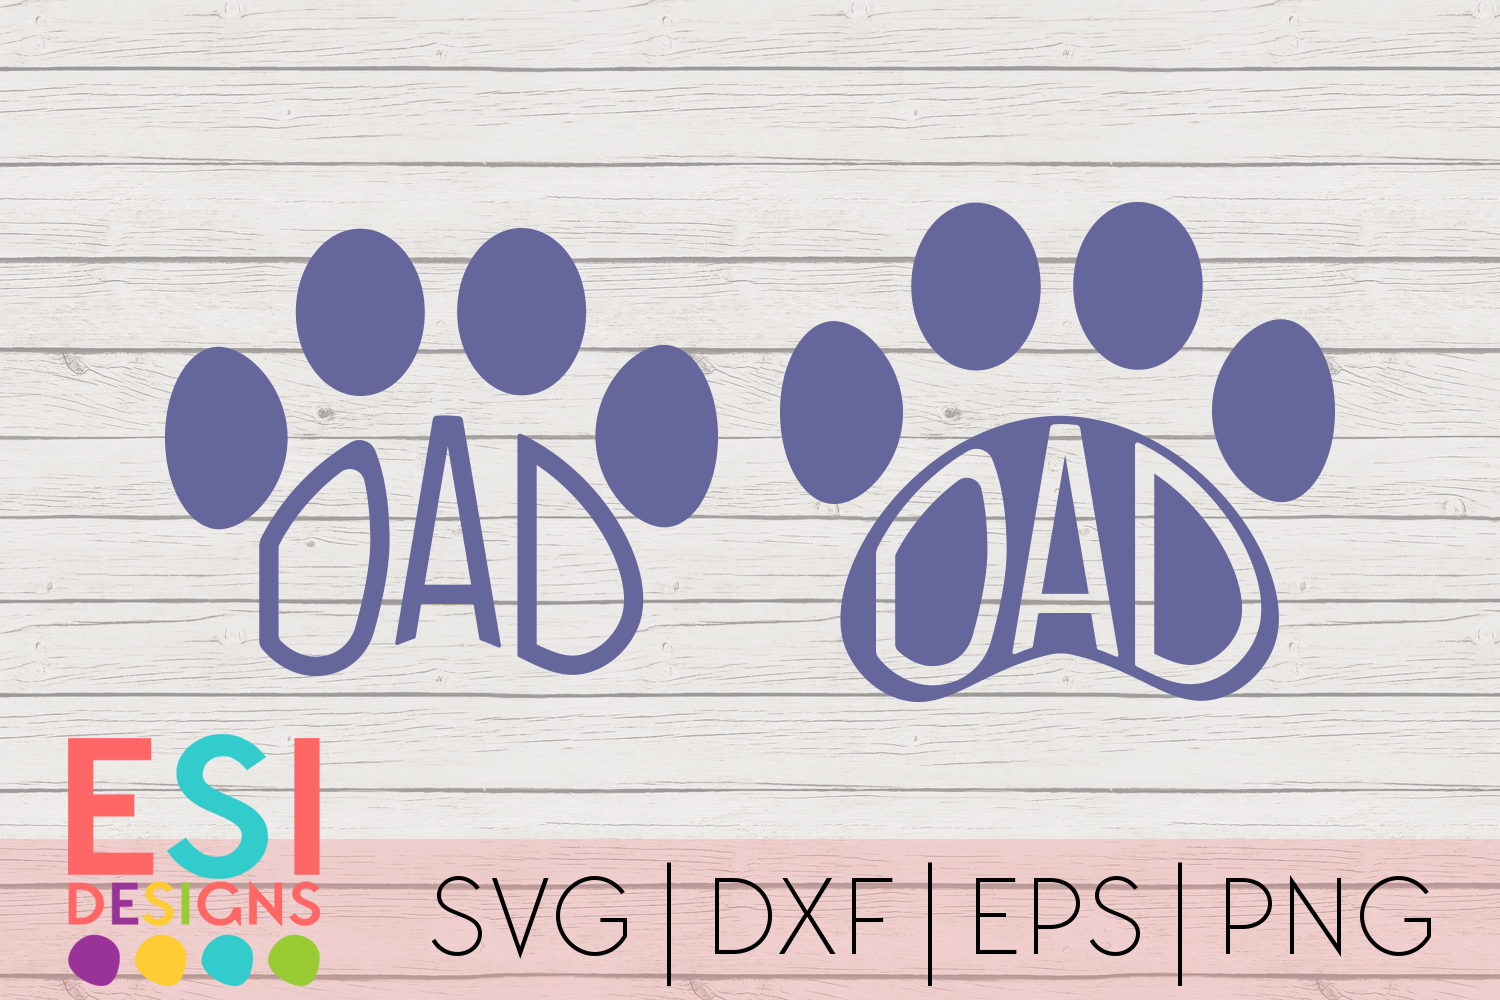 Download Dad Paw Print Designs | Dog SVG |Pet SVG| SVG, DXF, EPS, PNG